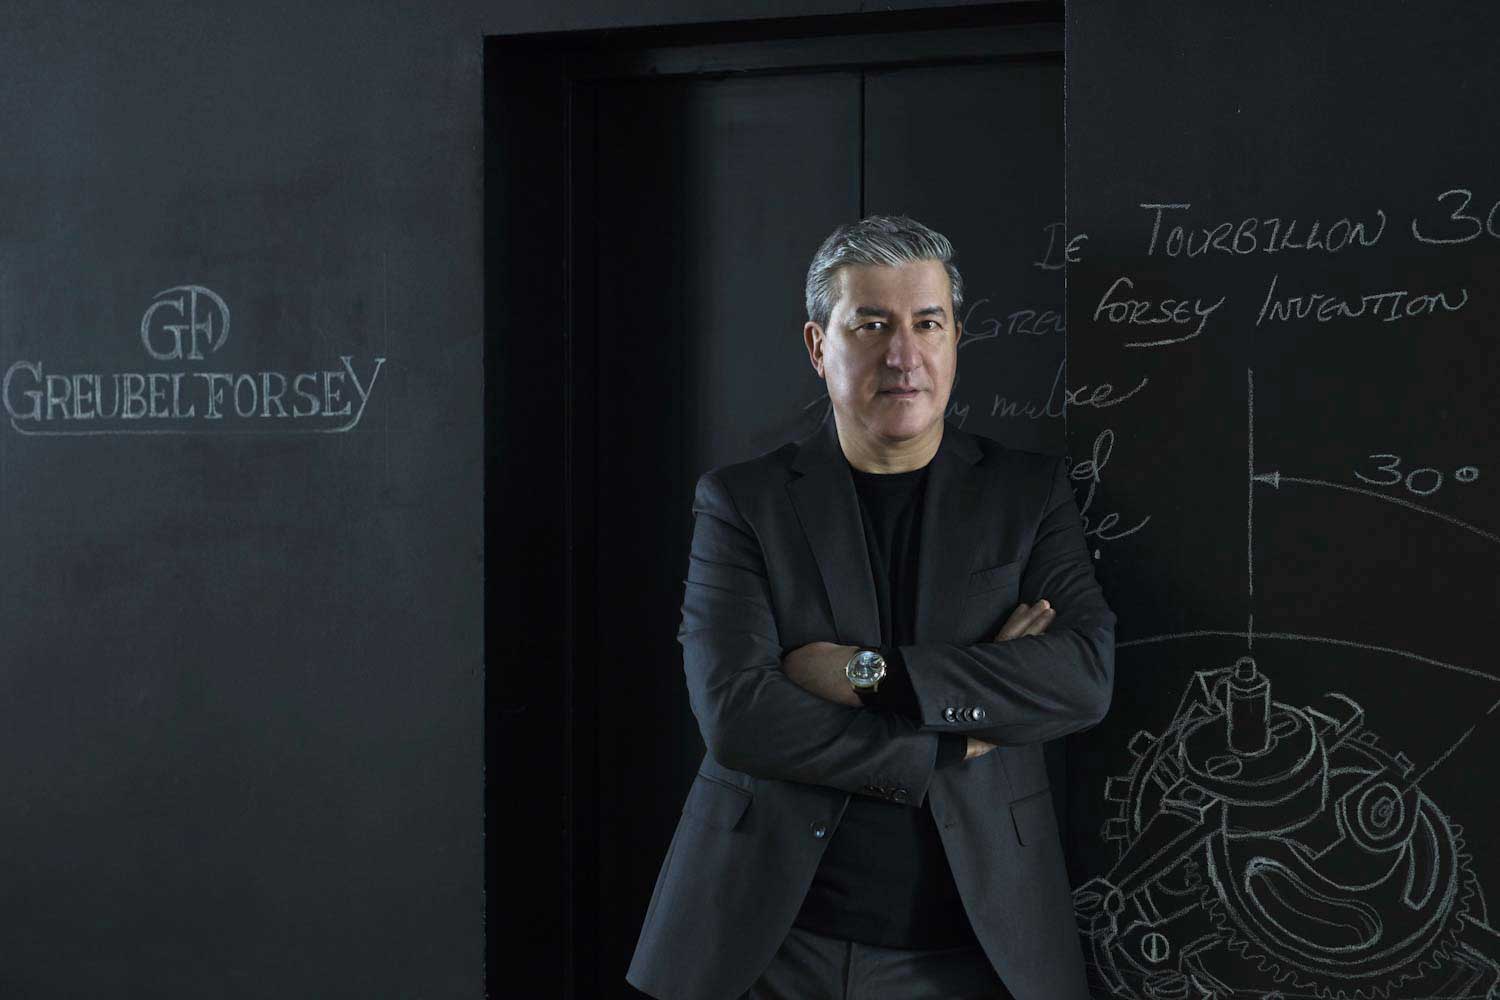 Greubel Forsey’s CEO, Antonio Calce